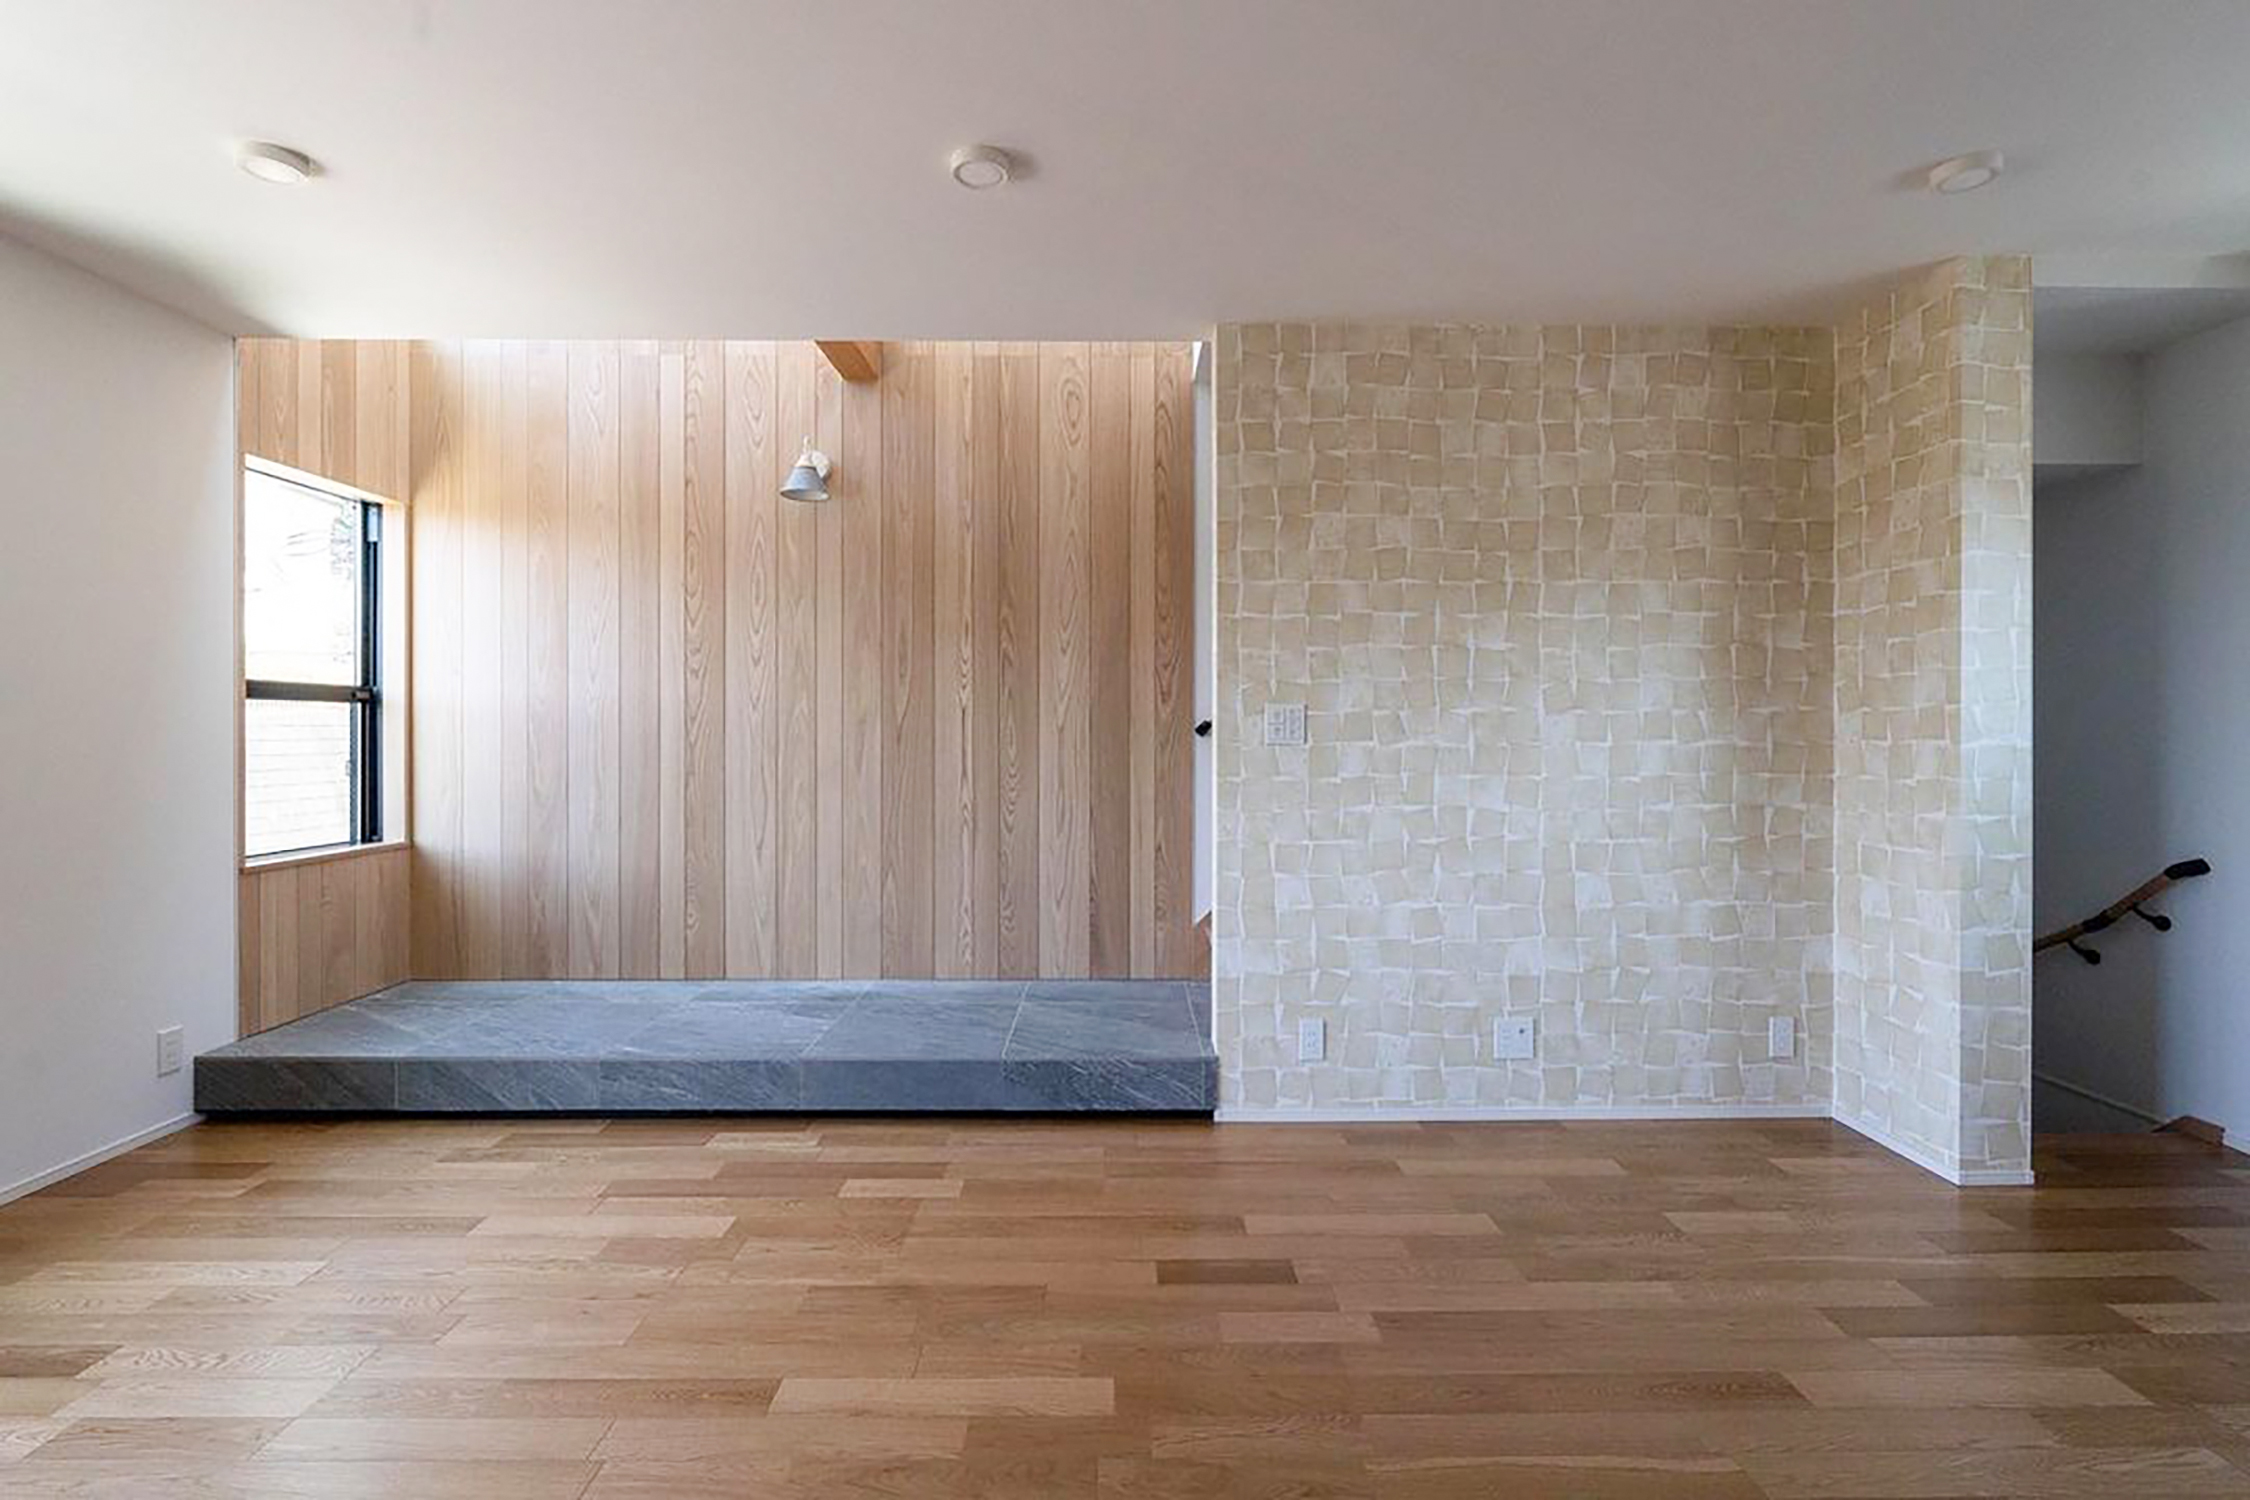 神奈川県横浜市の住宅にて建築家・大西麻貴がデザインした、揺らぎのある四角形の連なりが特徴的なデザインを施工